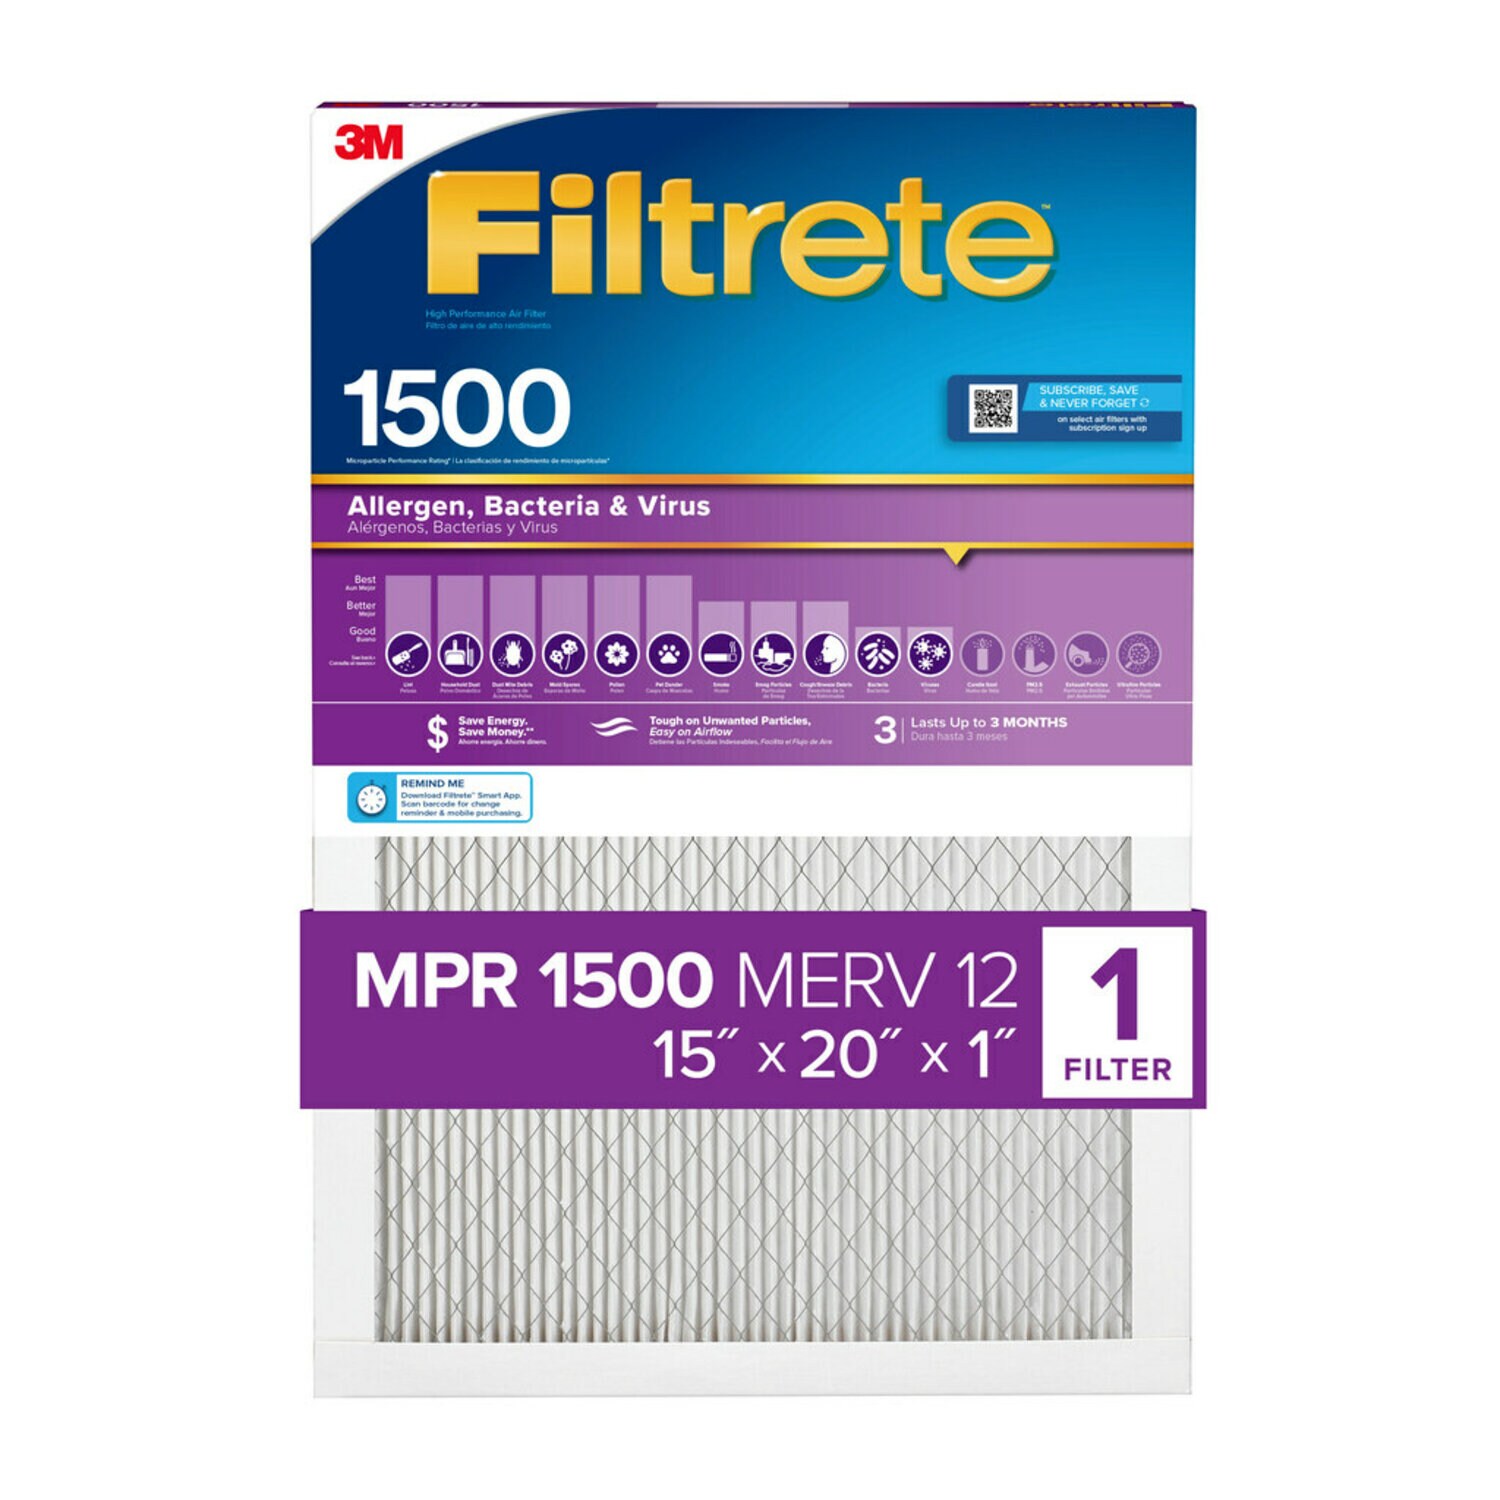 7100265130 - Filtrete High Performance Air Filter 1500 MPR 2006DC-4, 15 in x 20 in x 1 in (38.1 cm x 50.8 cm x 2.5 cm)